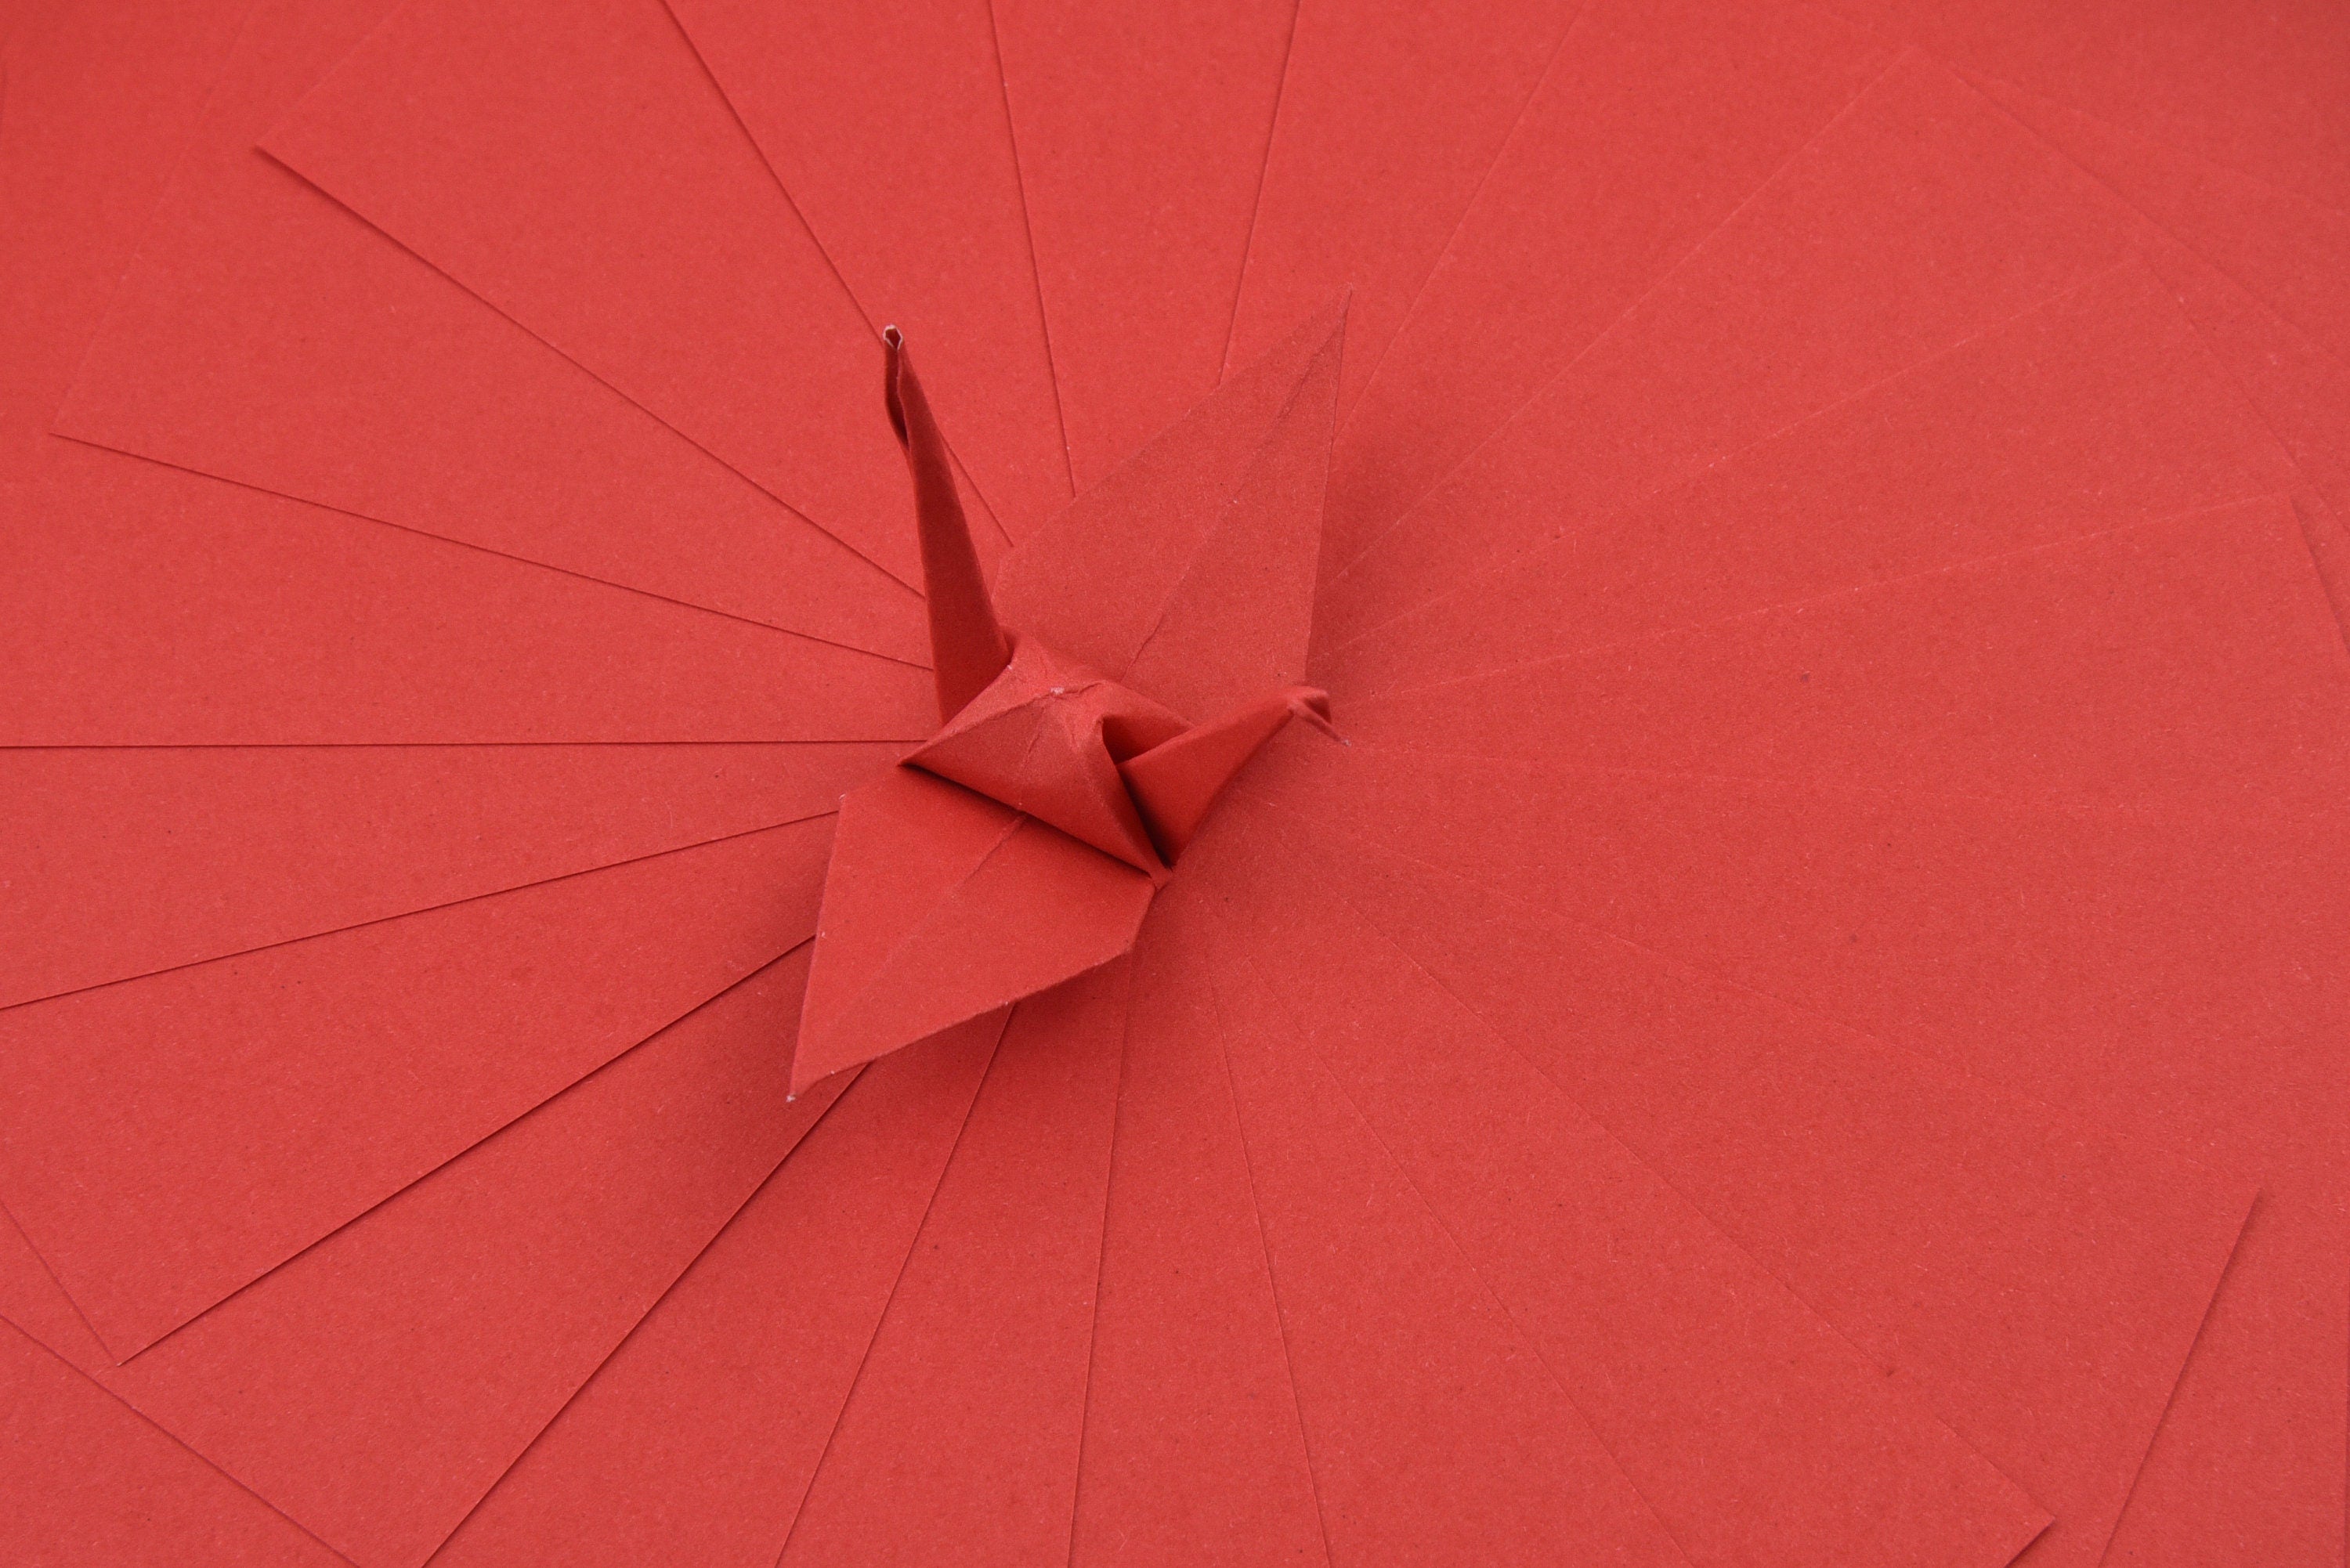 100 fogli di carta origami rossi - 6x6 pollici - Confezione di carta quadrata per piegare, gru origami e decorazioni - S16